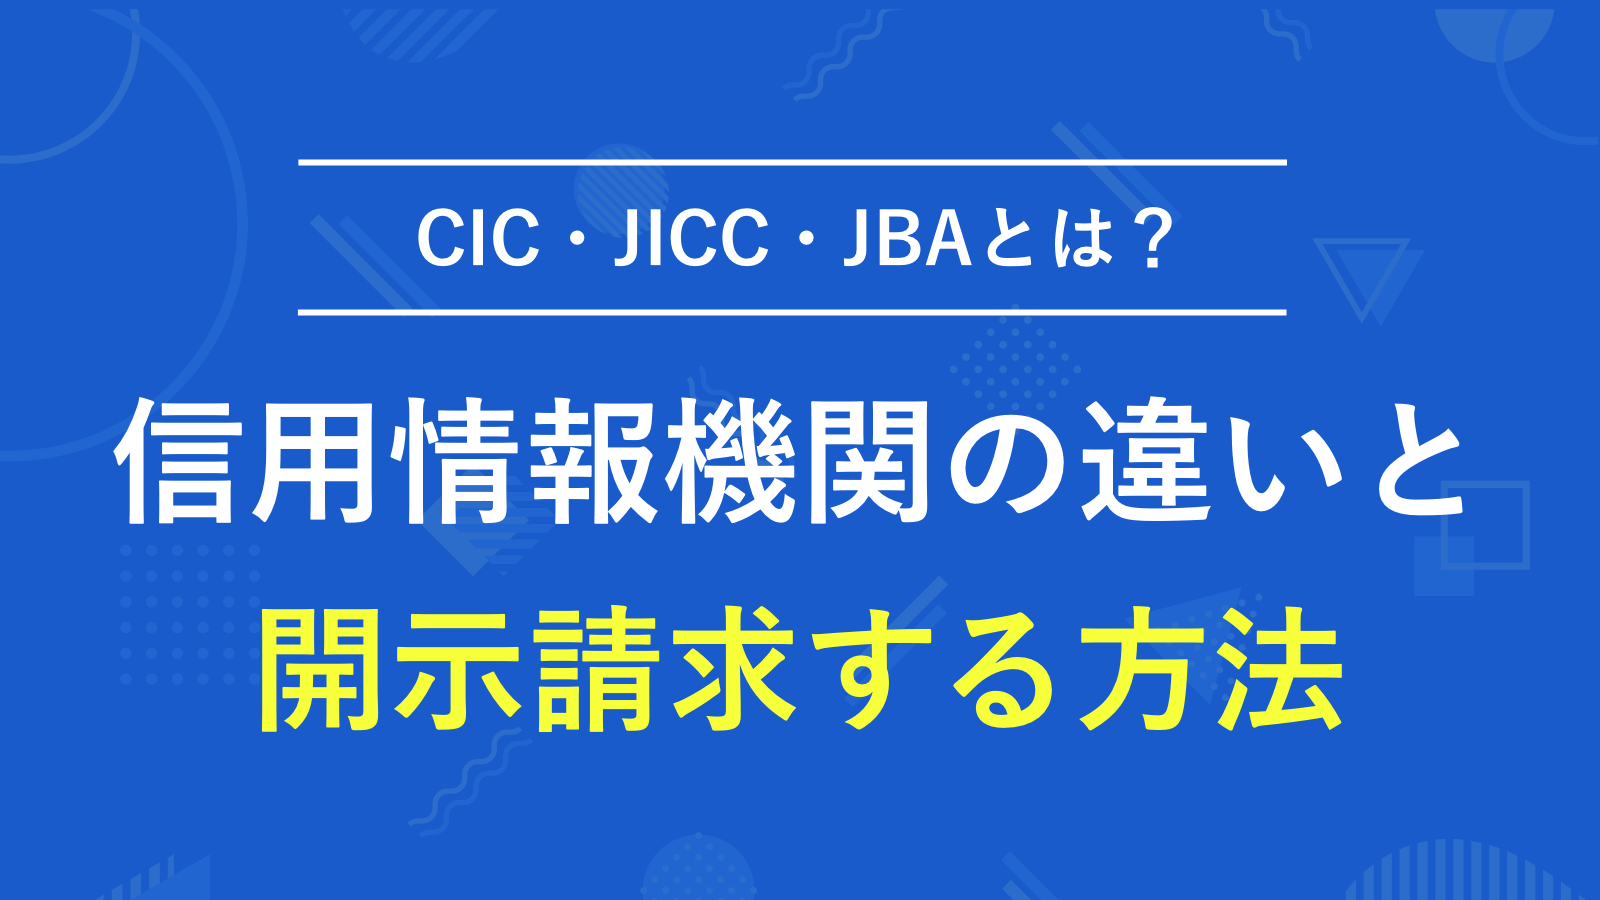 CIC・JICC・JBAといった信用情報機関の違いを徹底解説